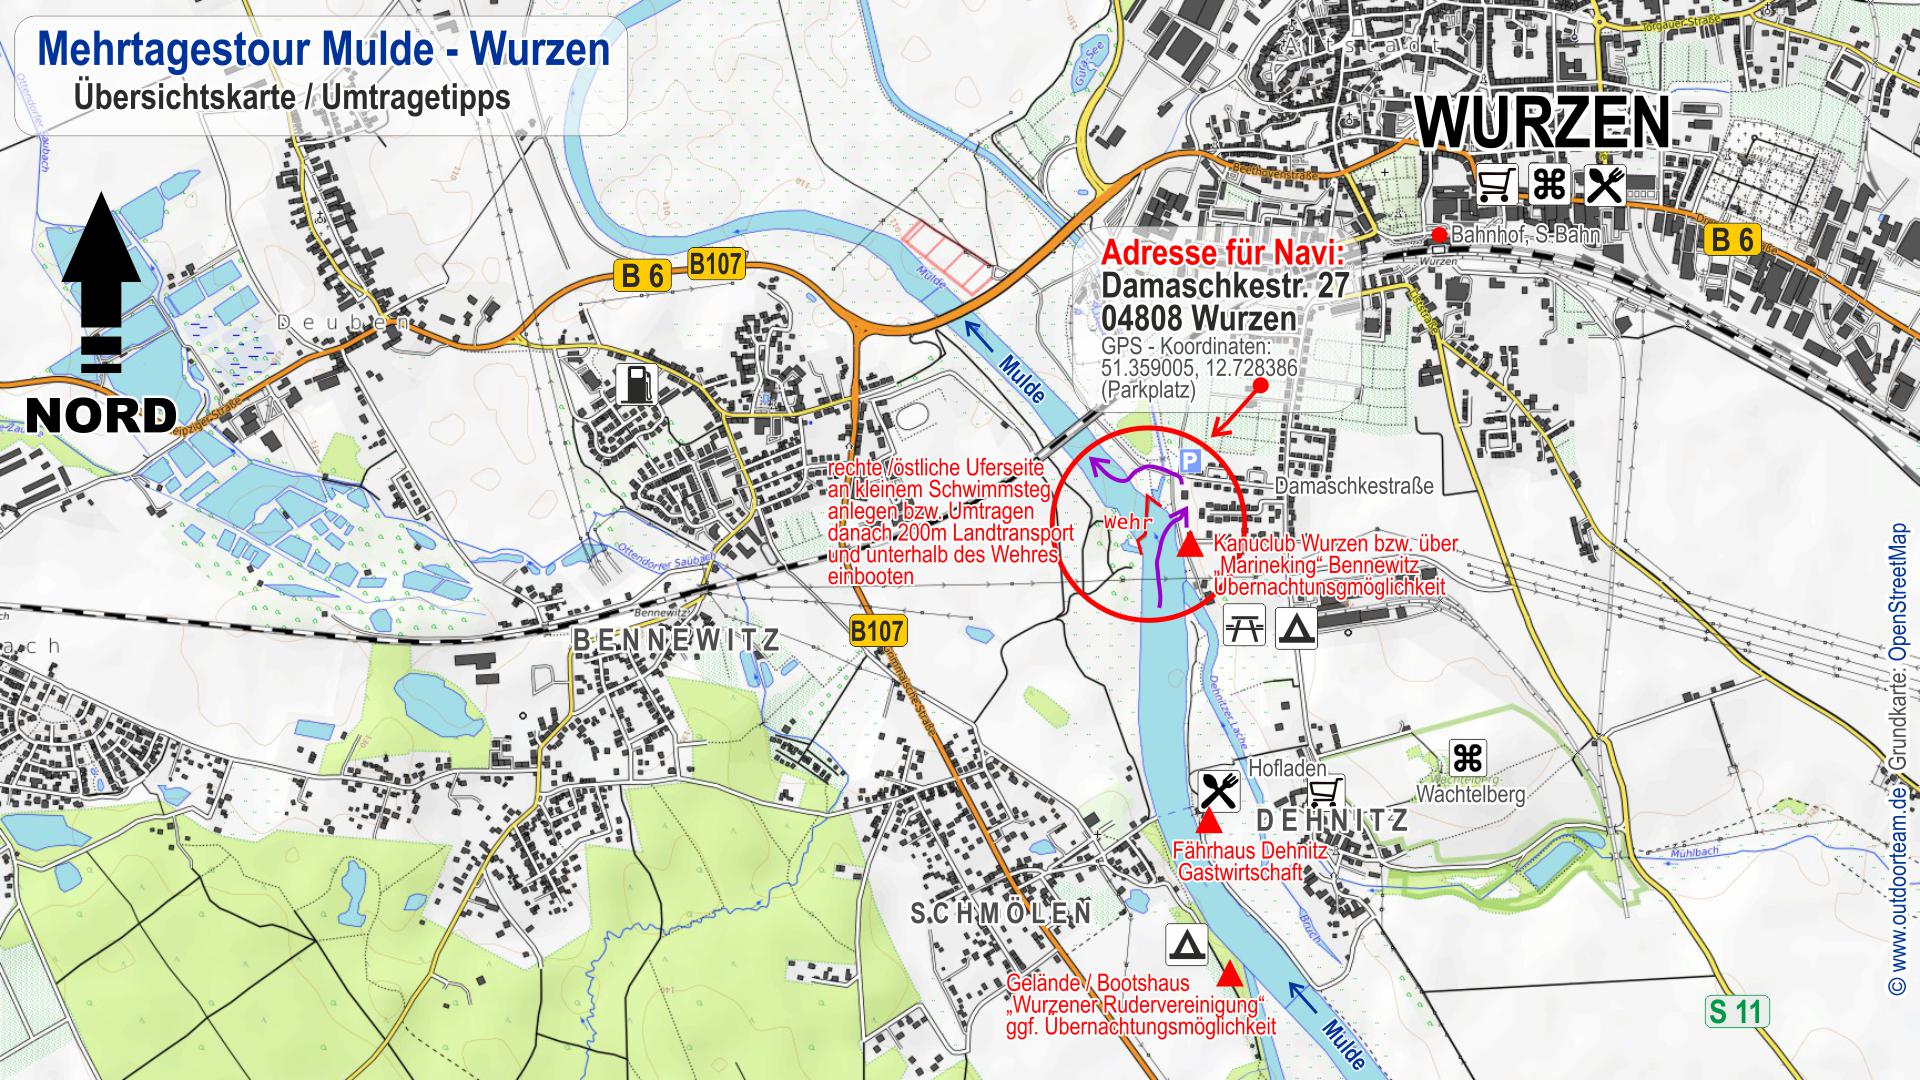 Topografische Übersichtskarte Stadt Wurzen und Mulde - Stadtwehr. Infos zum Umtragen, Biwak bzw. Übernachten, Parken sowie Navi-Adresse